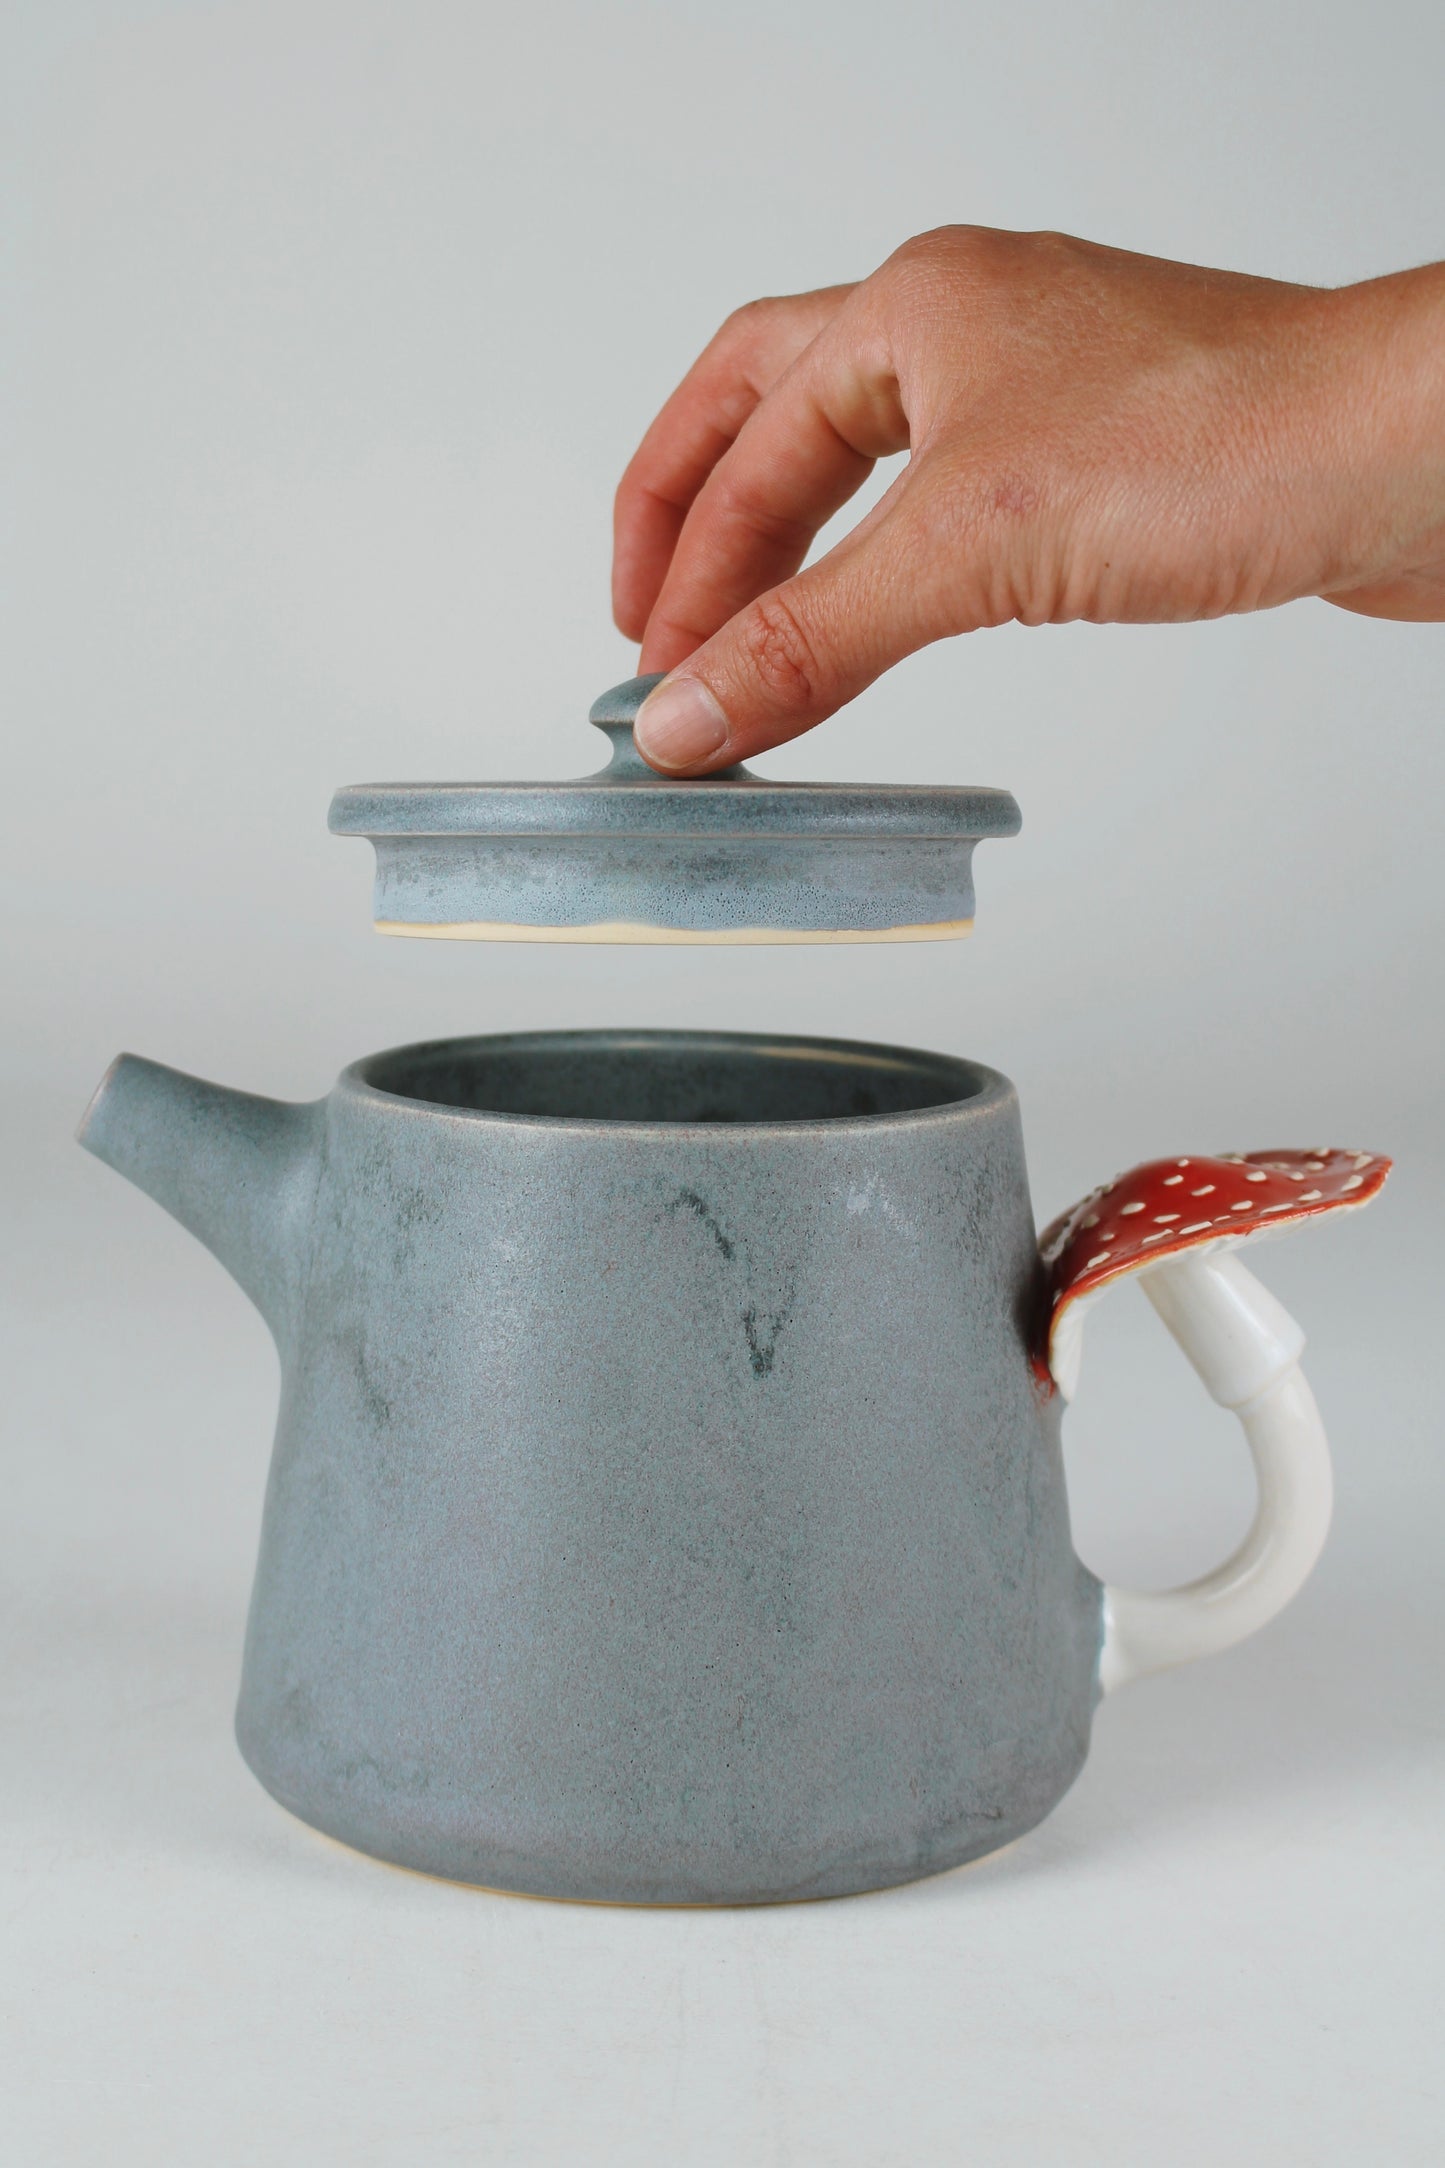 Slate Amanita Mushroom Teapot